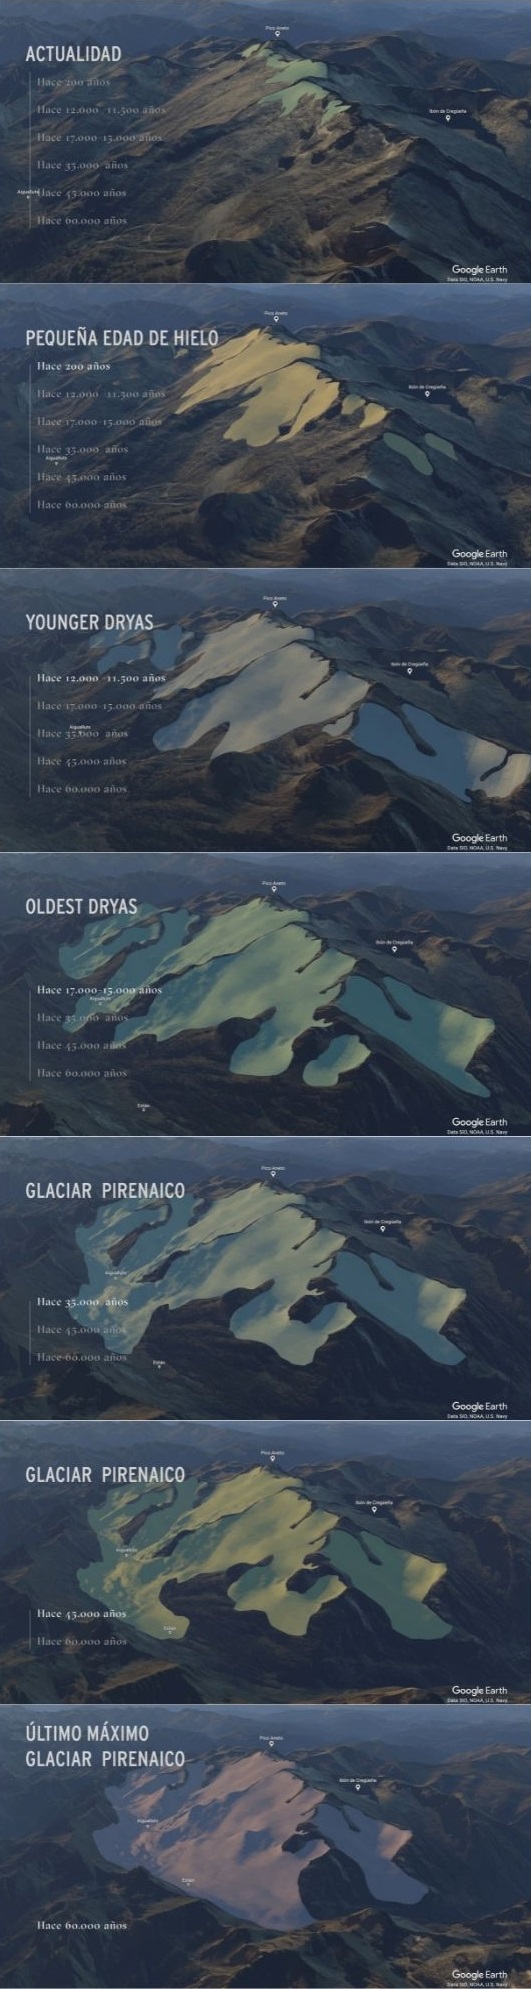 Evolución glaciar